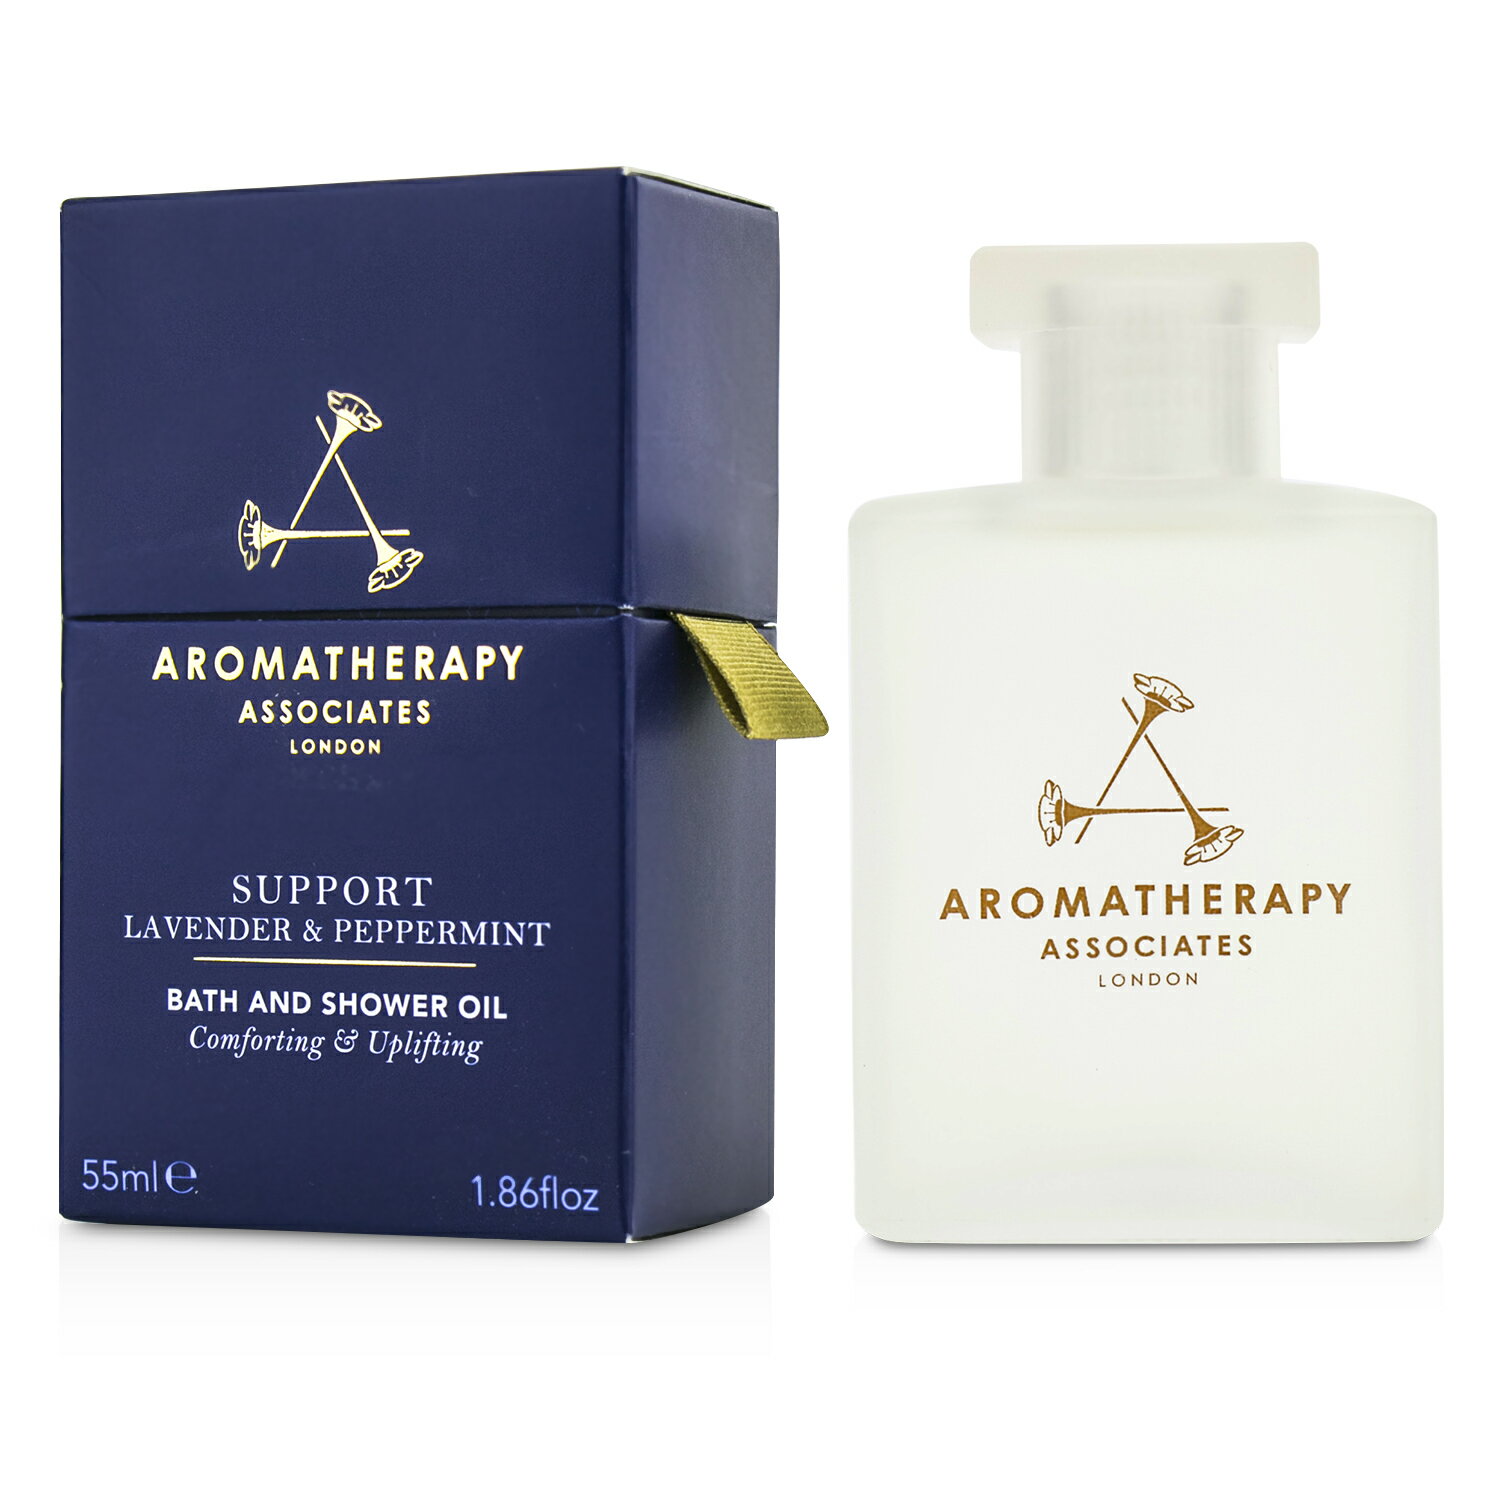 芳療之盟 Aromatherapy Associates - 支援 - 熏衣草及薄荷浸浴及沐浴精油